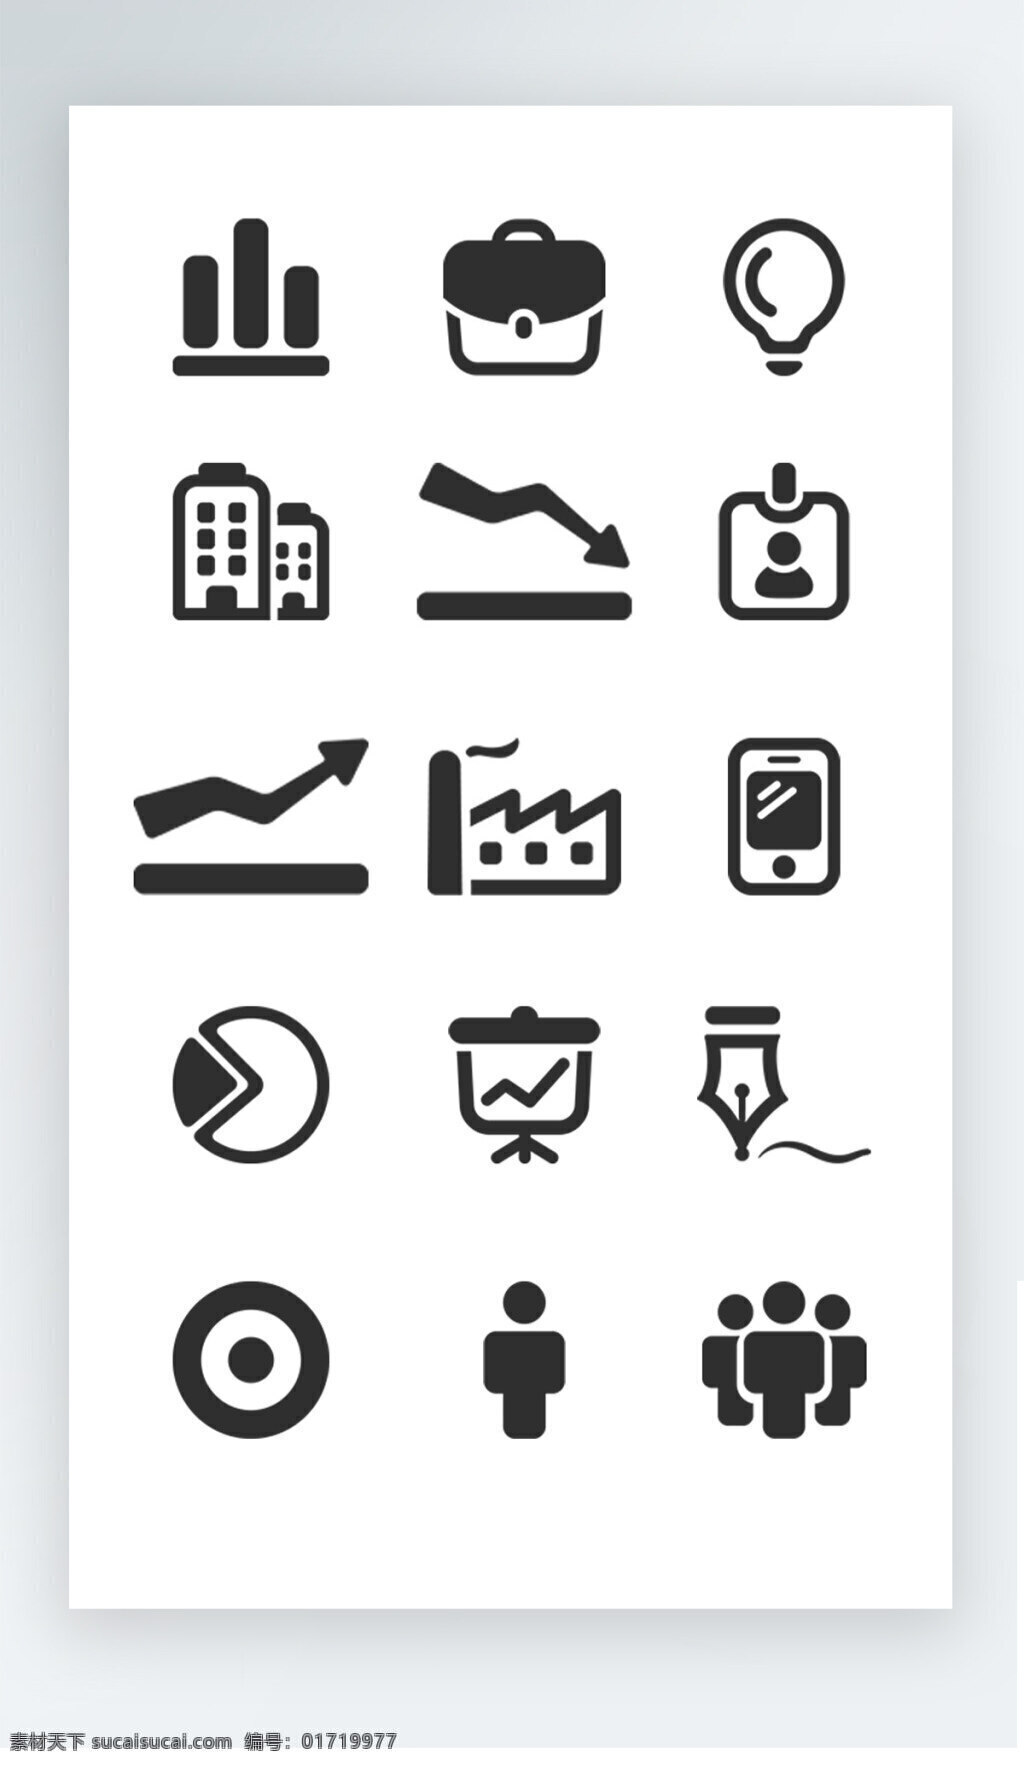 数据 商业 图标 黑白 icon 商业图标 黑白图标 图标素材 人物 数据图标